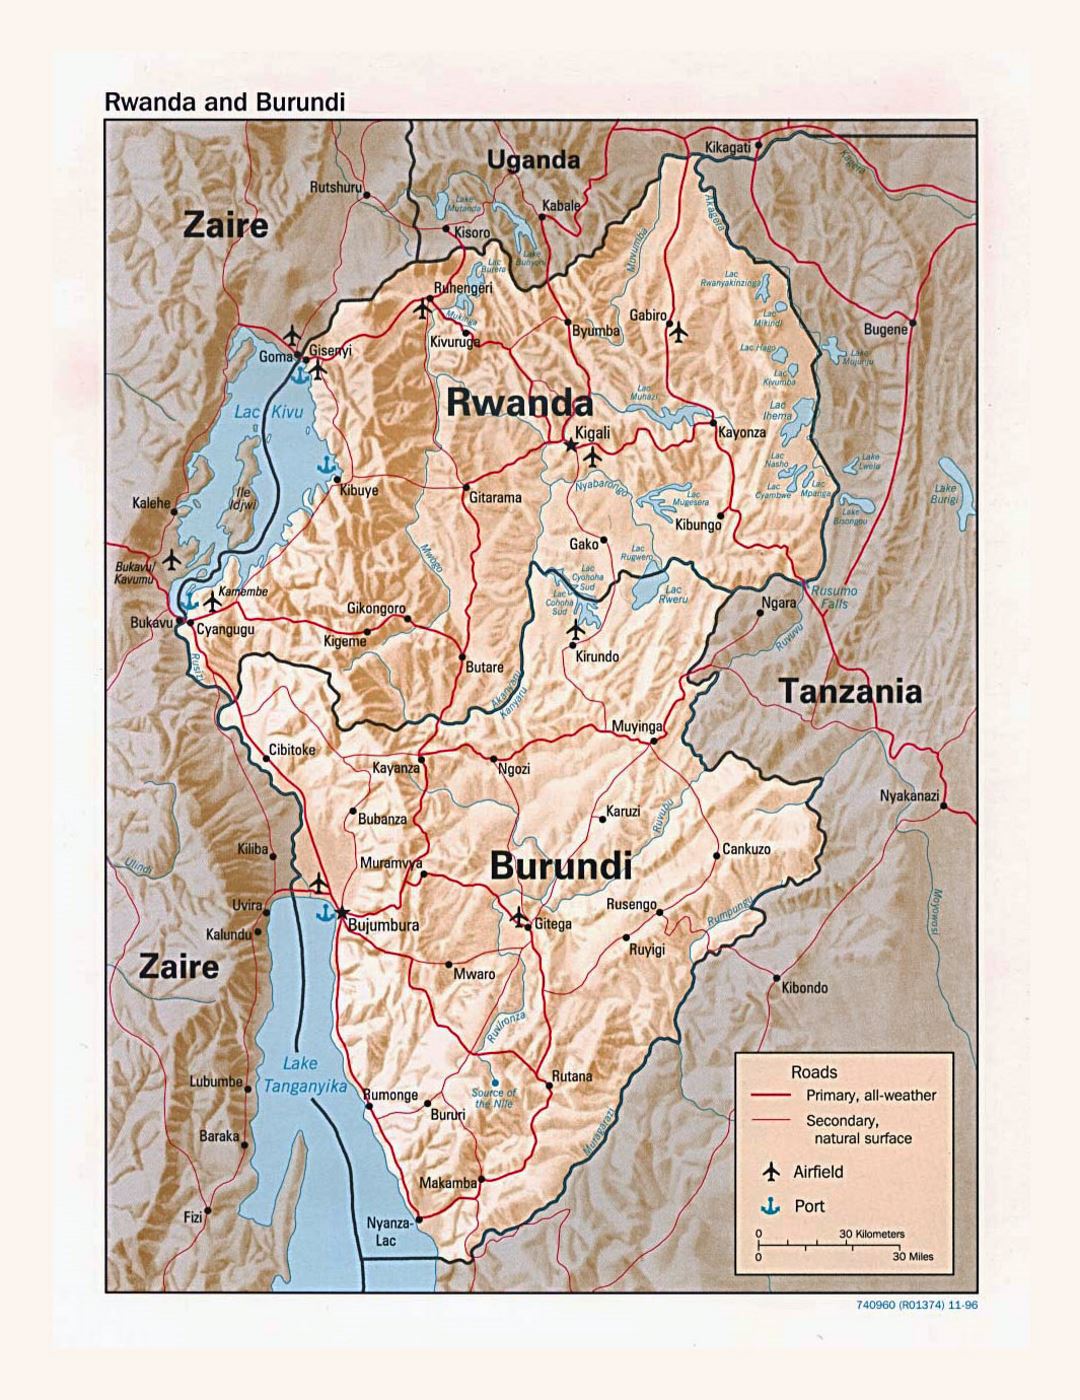 Детальная политическая карта Руанды и Бурунди с рельефом, дорогами, крупными городами, аэропортами и портами - 1996